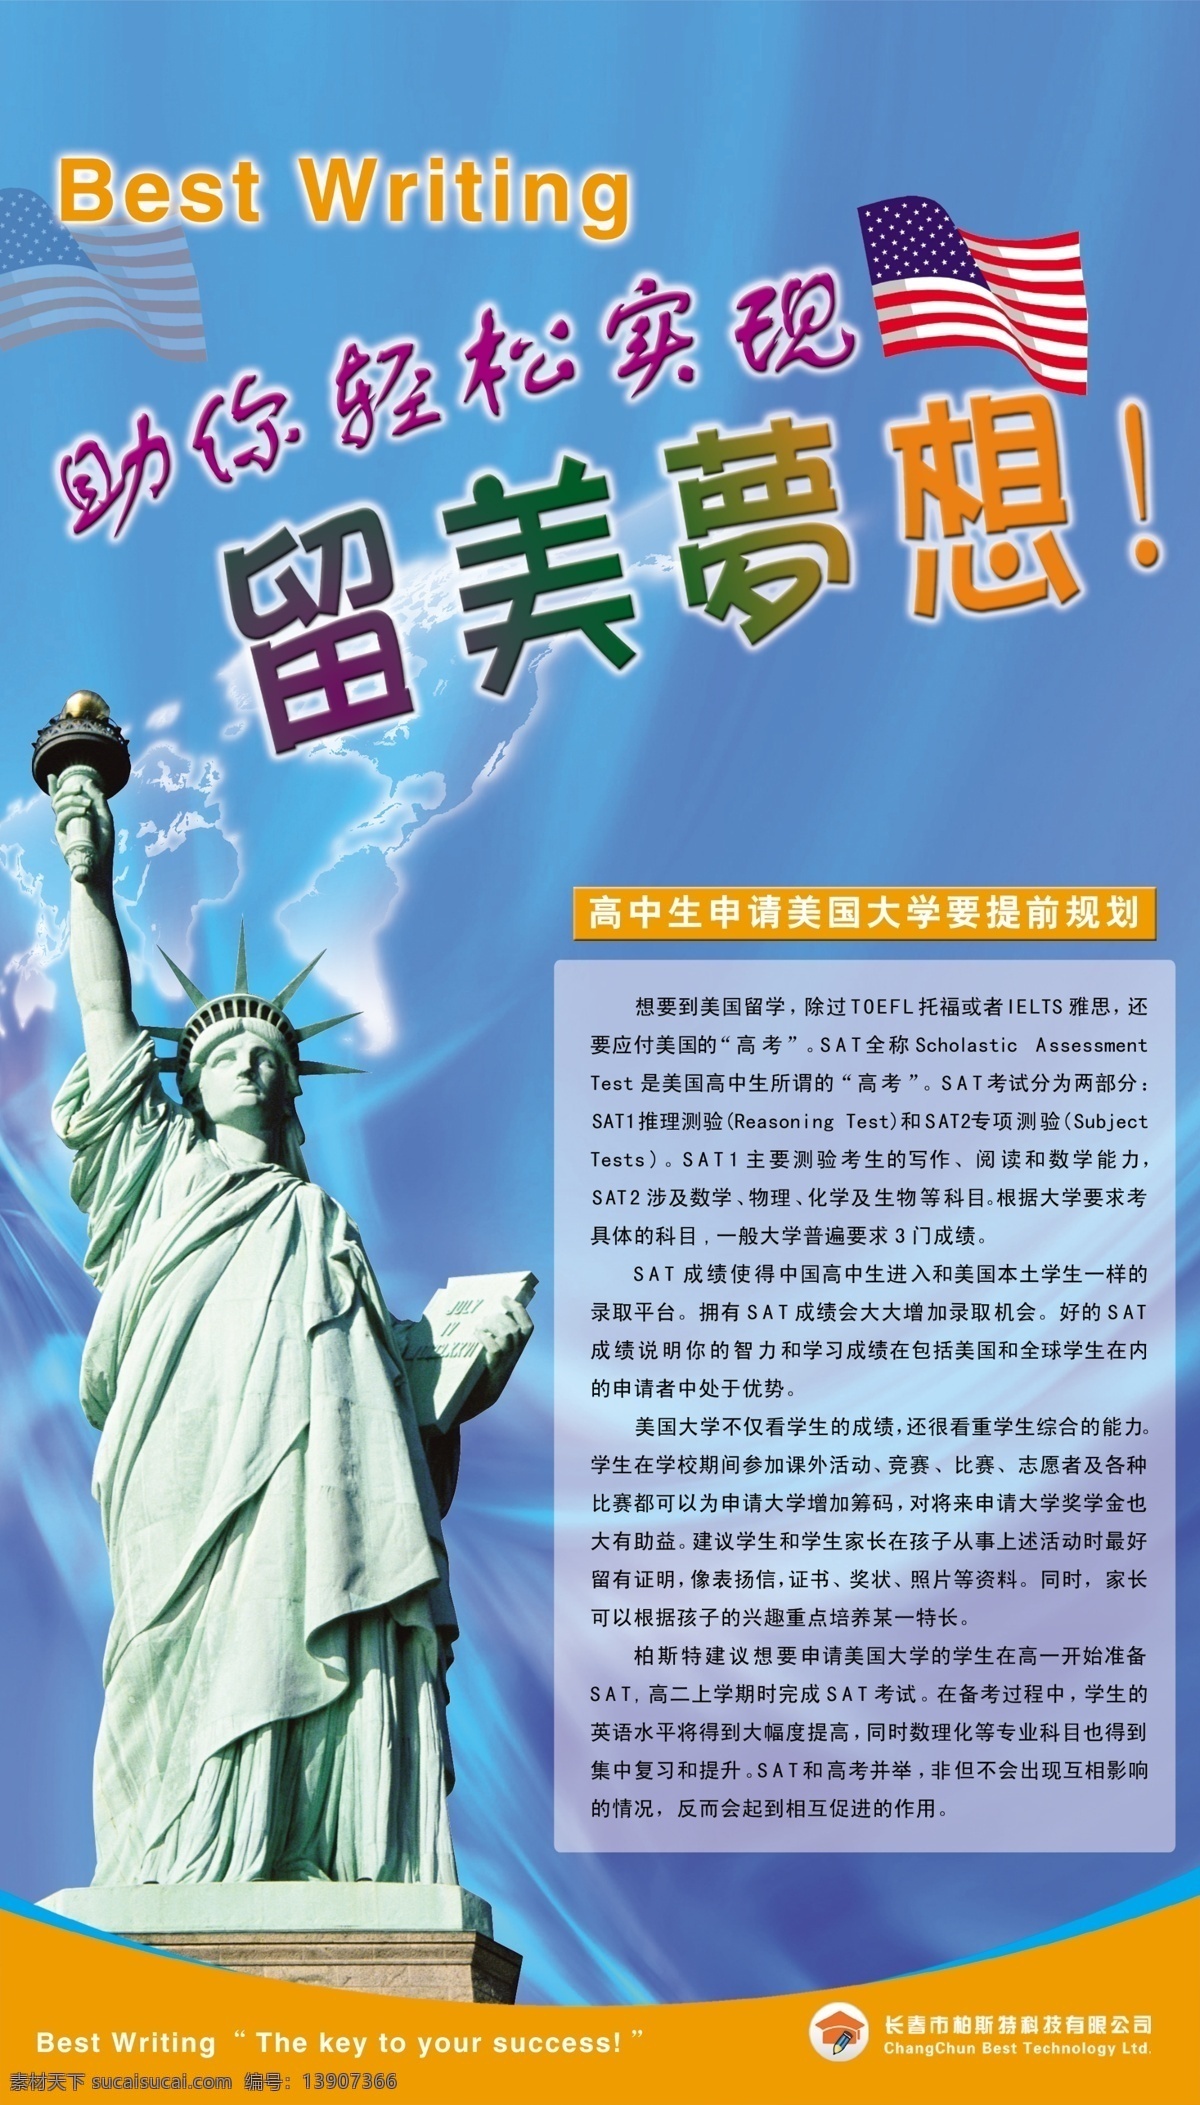 美国留学 宣传 展板 留学美国 自由女神 留学展板 展板模板 广告设计模板 源文件